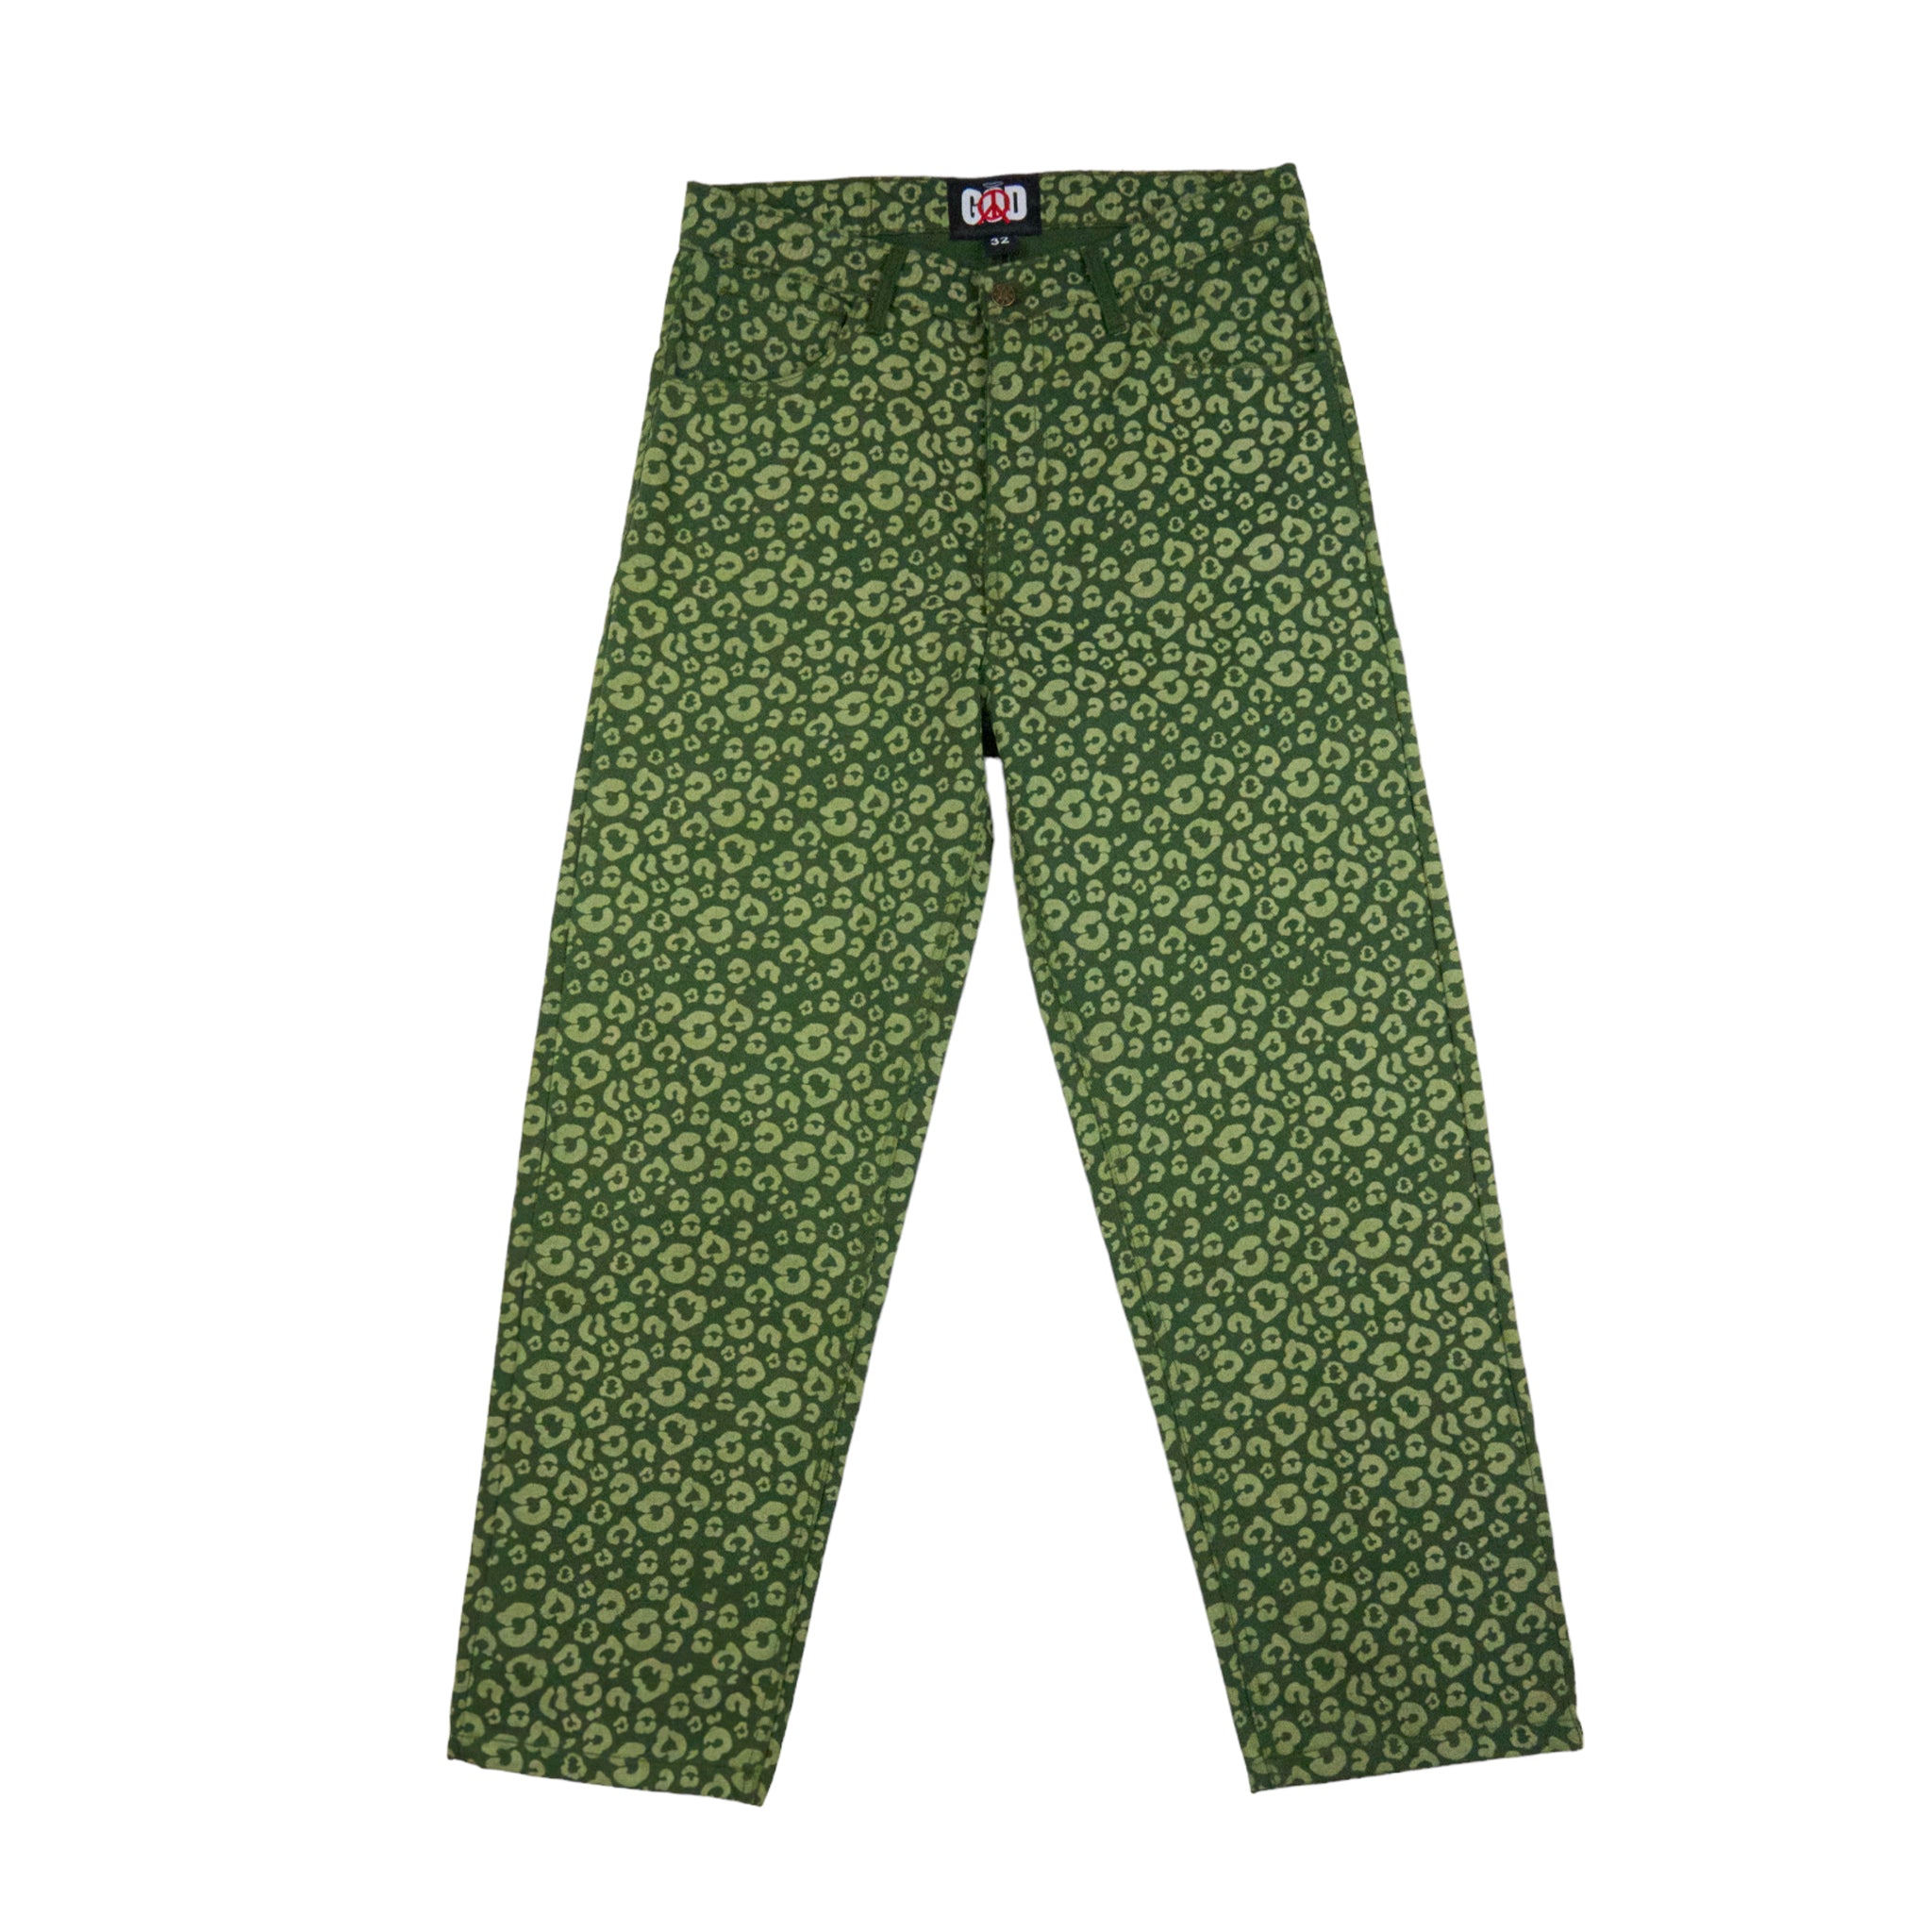 God Green Leopard Denim Print Jeans